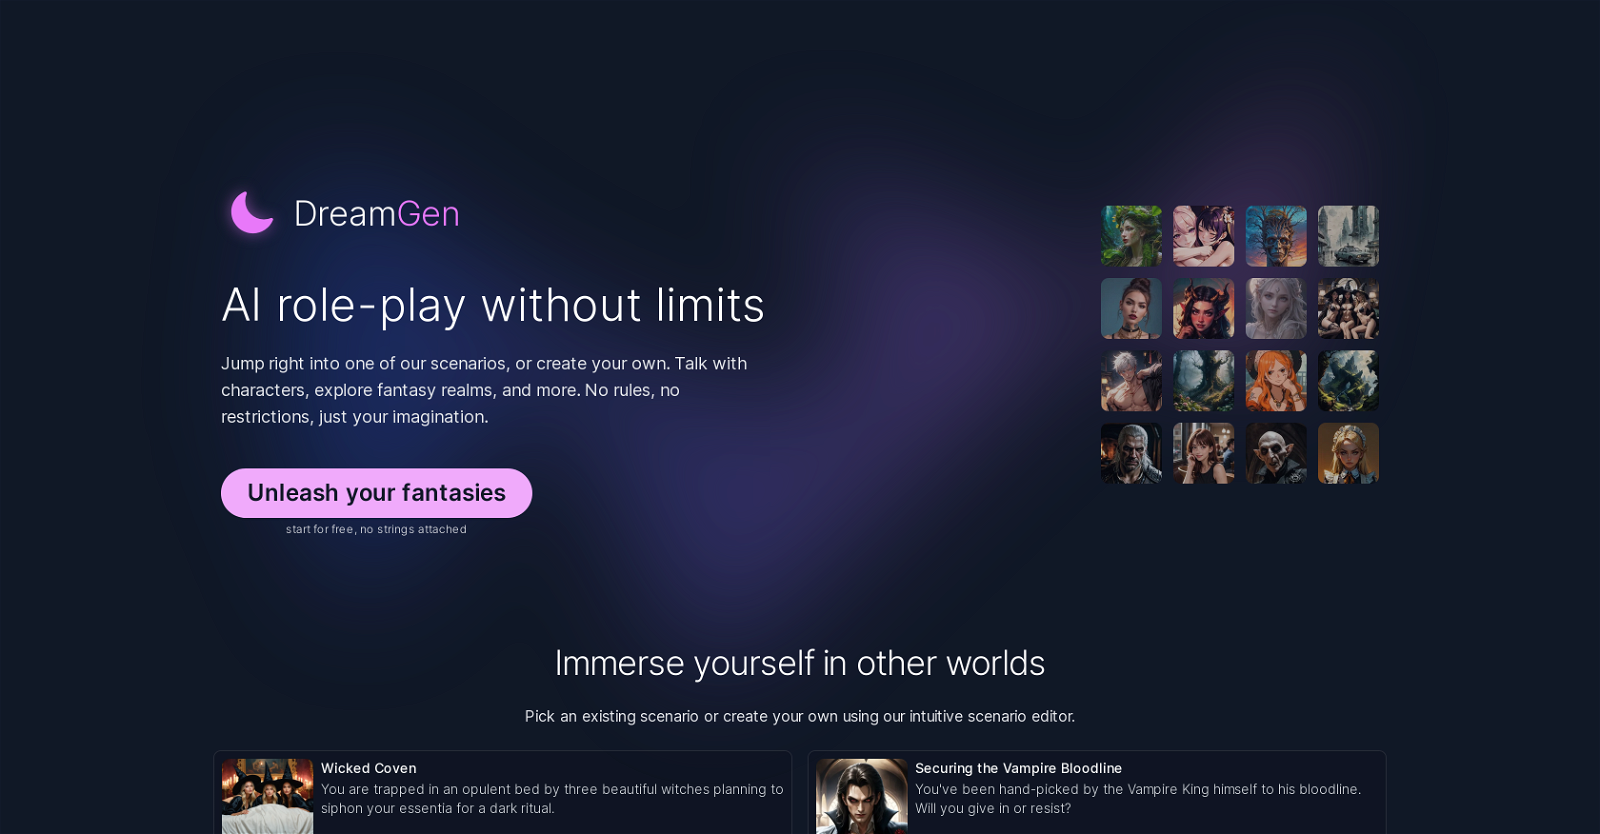 DreamGen Role Play website